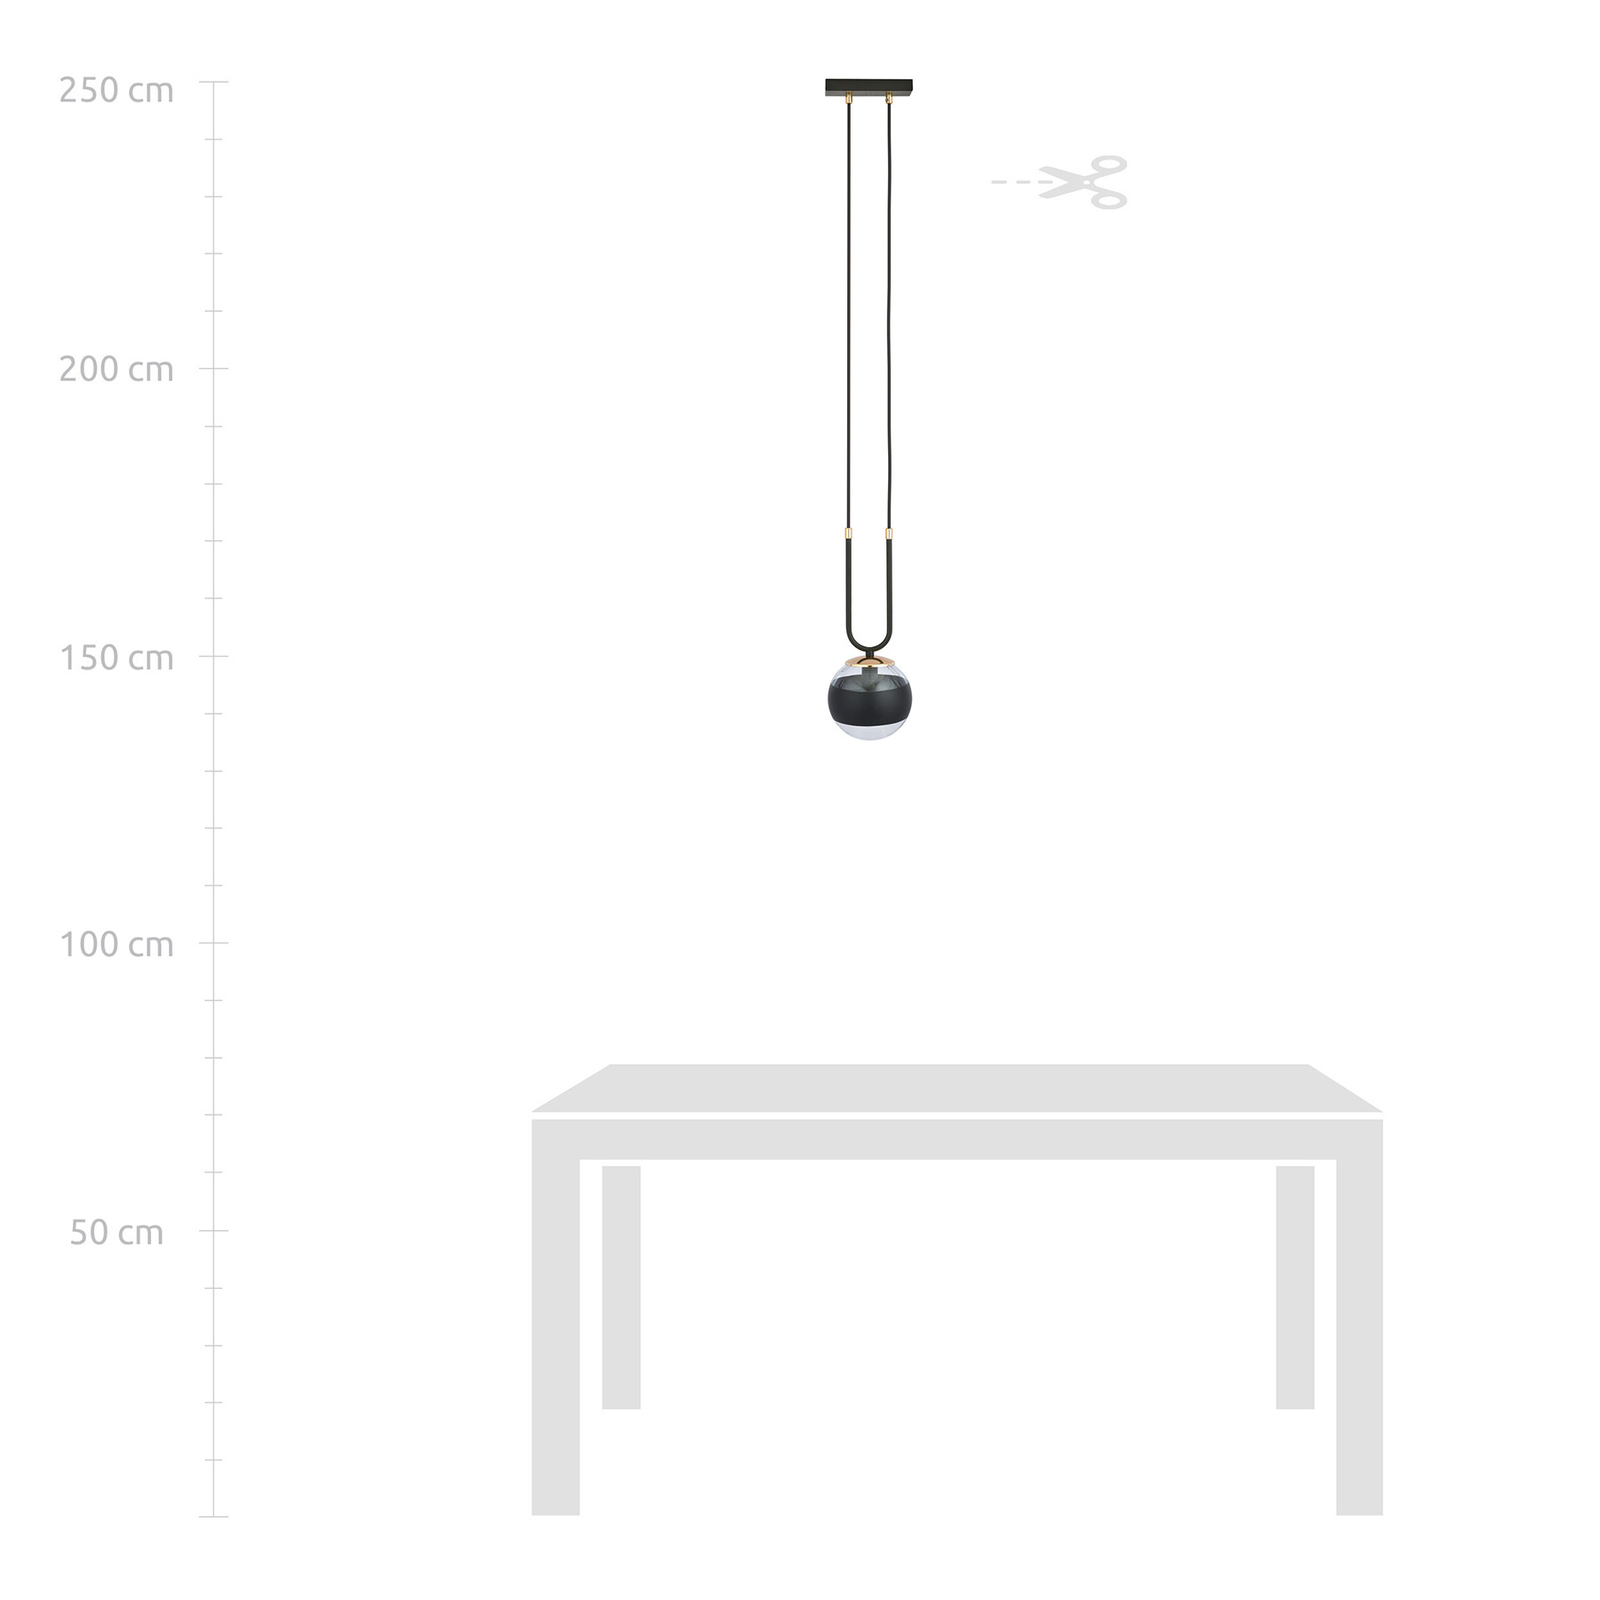 Hanglamp Linear, zwart/helder, 1-lamp